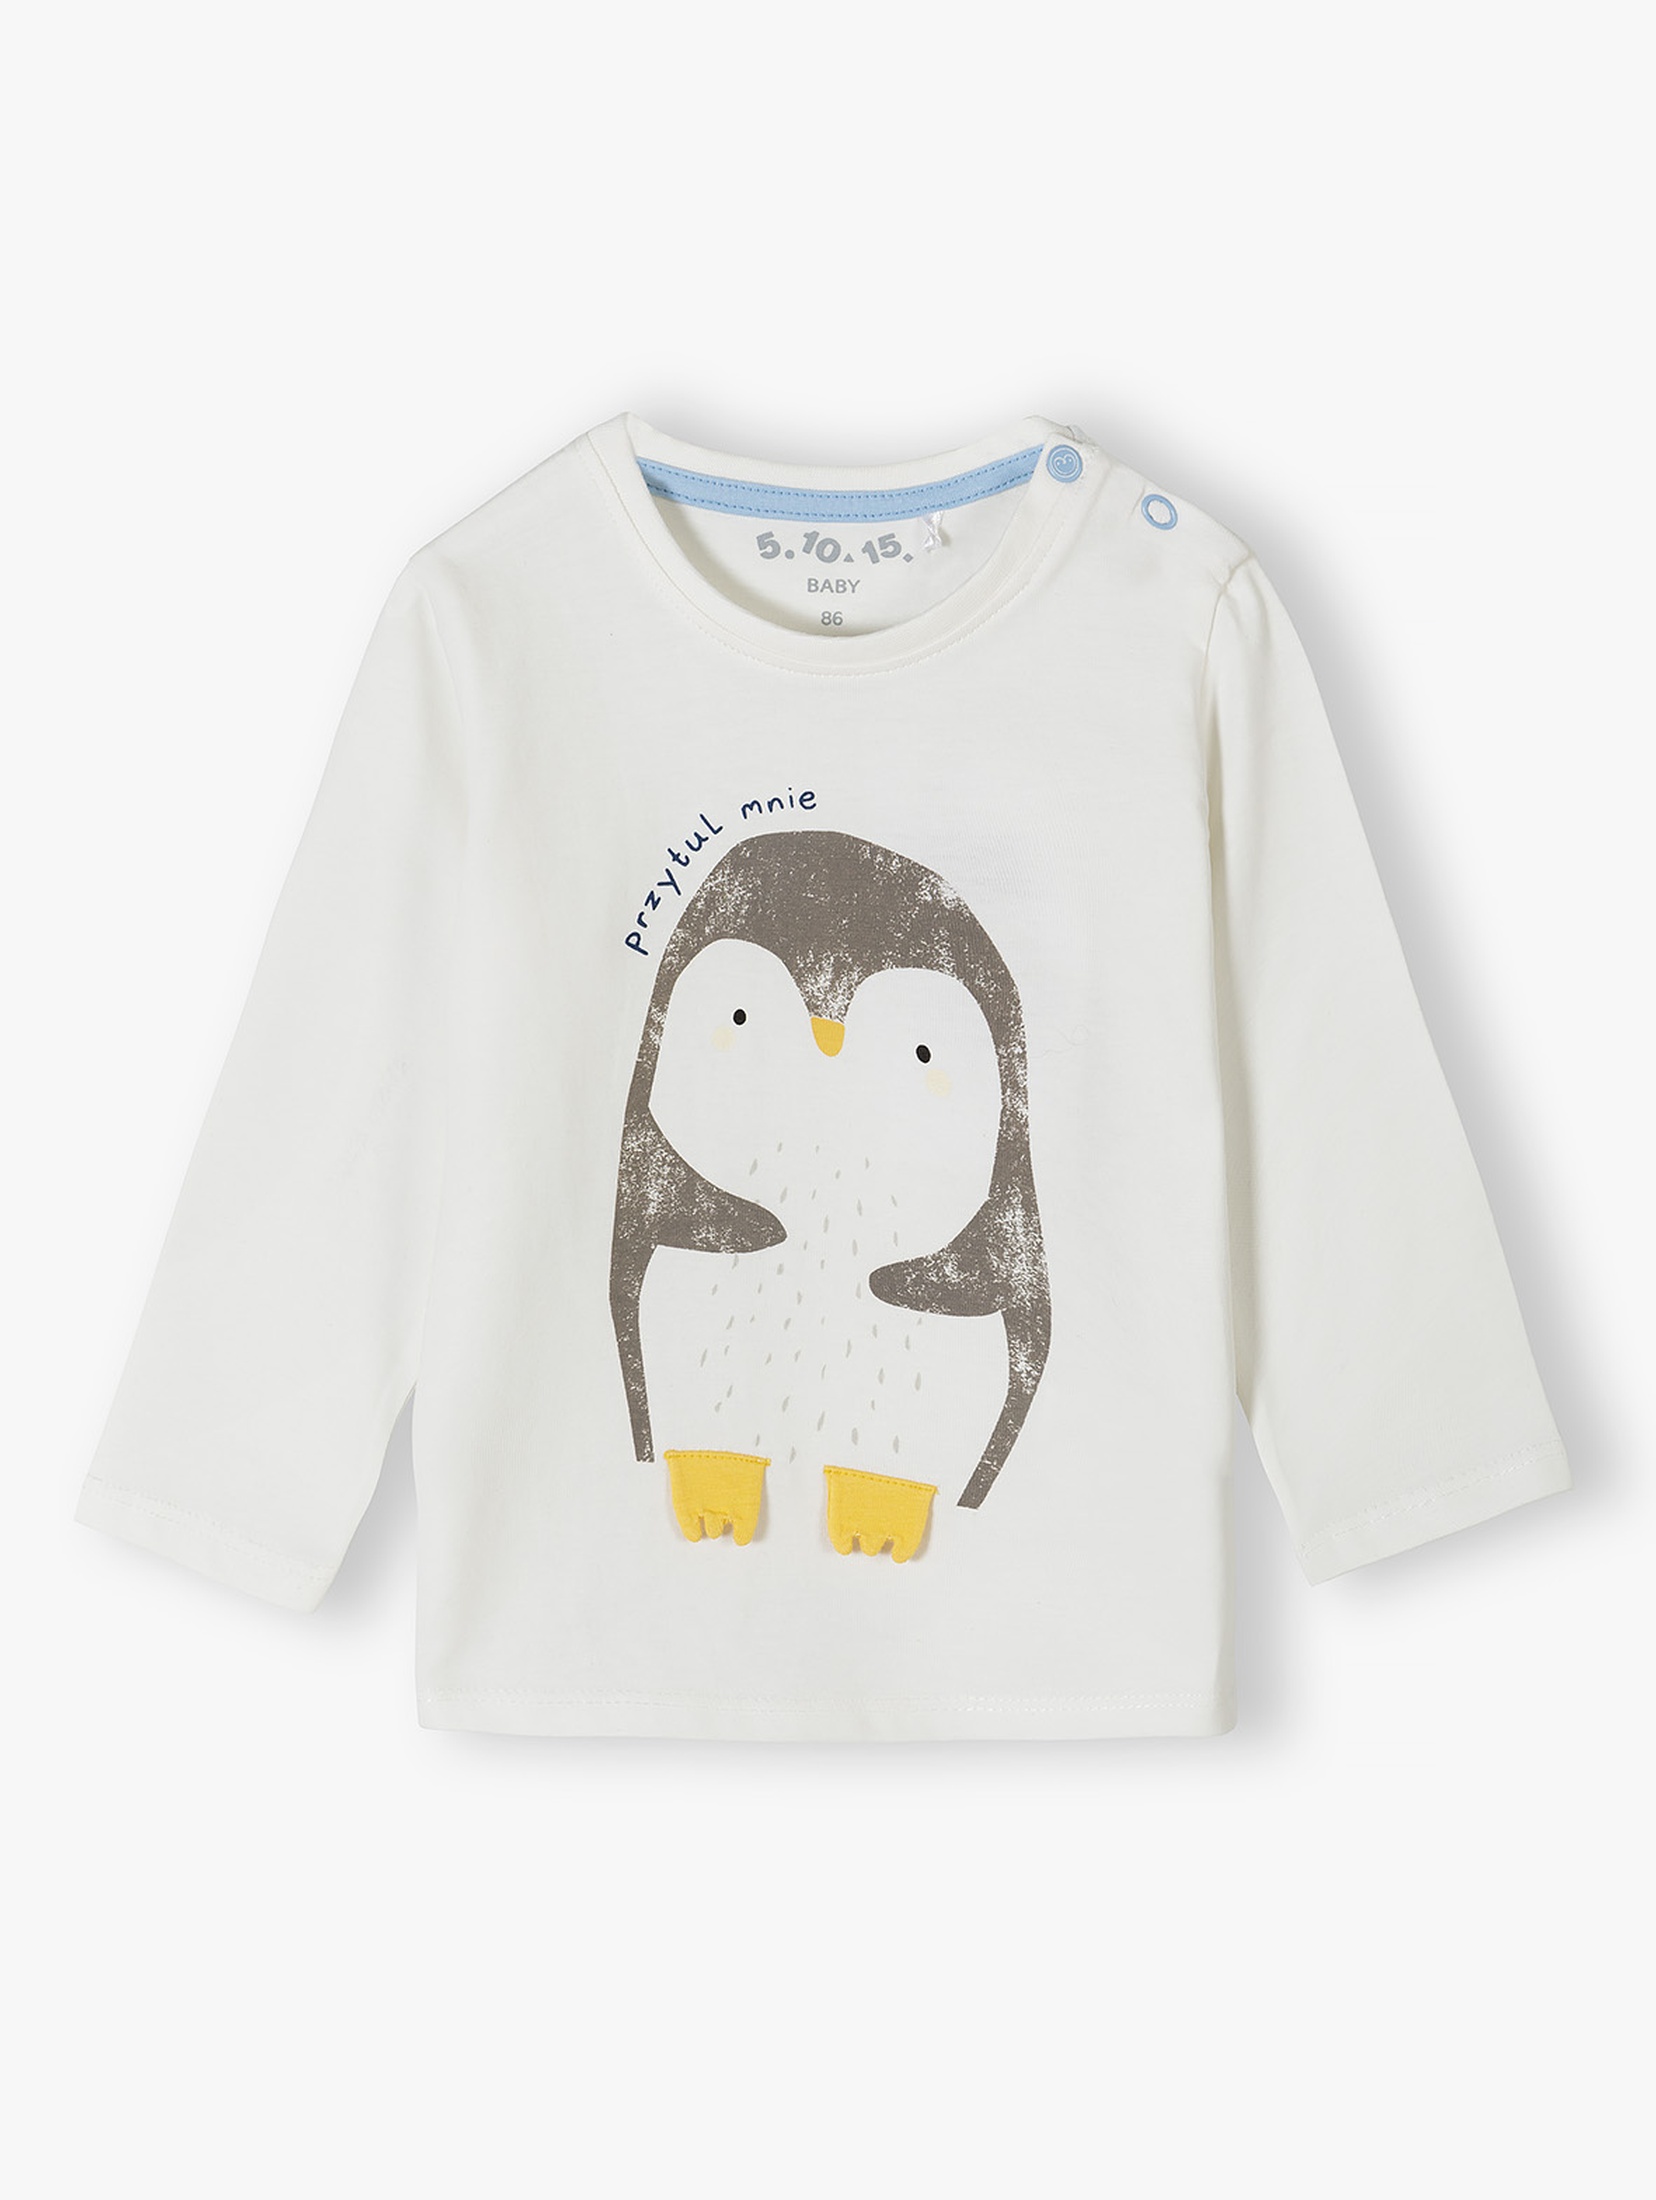 Bluzka niemowlęca dla chłopca z pingwinem - biała